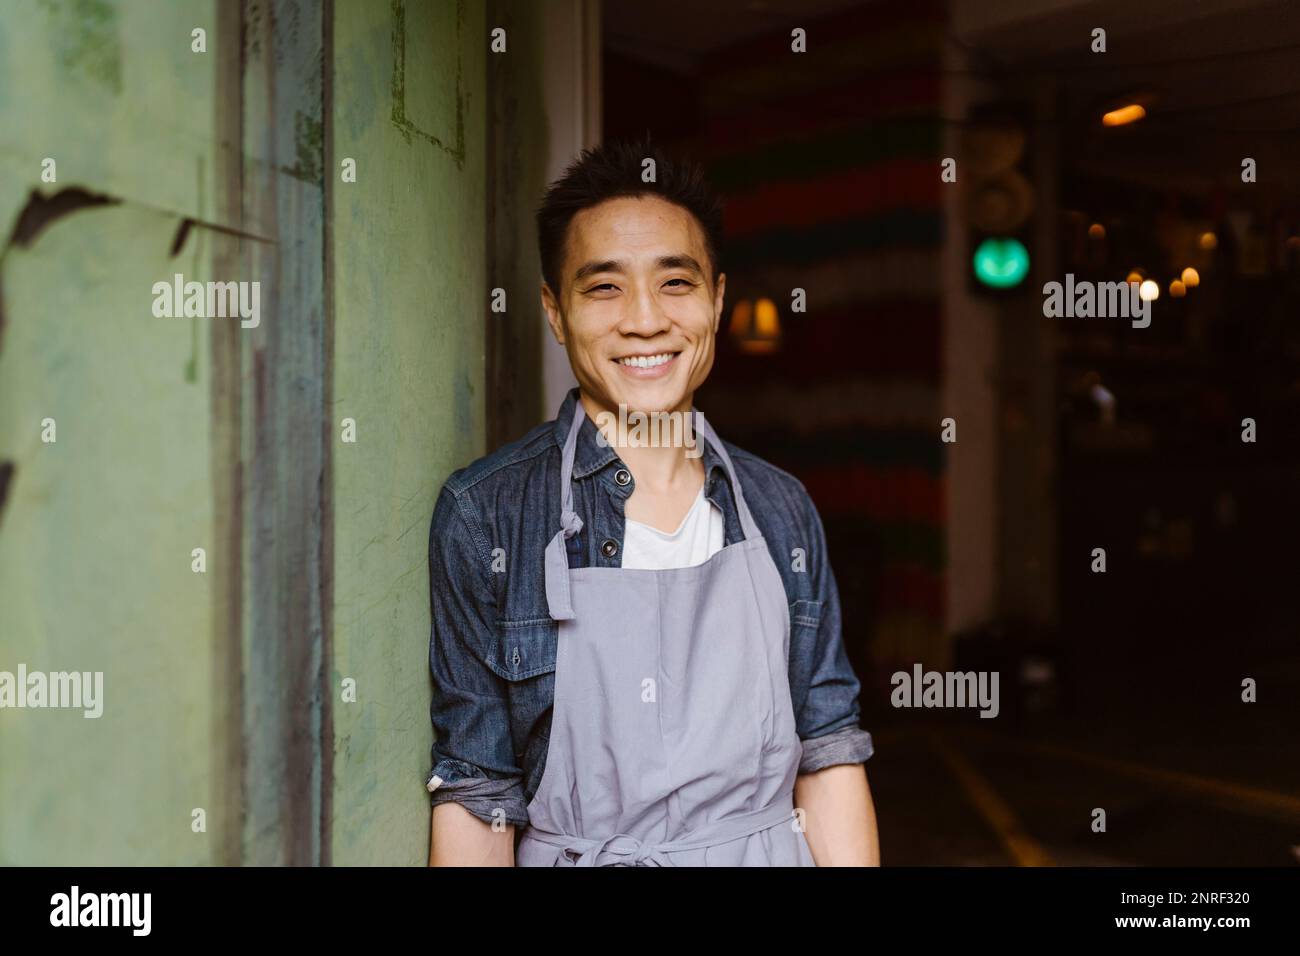 Ritratto del proprietario sorridente del ristorante in grembiule appoggiato al muro Foto Stock